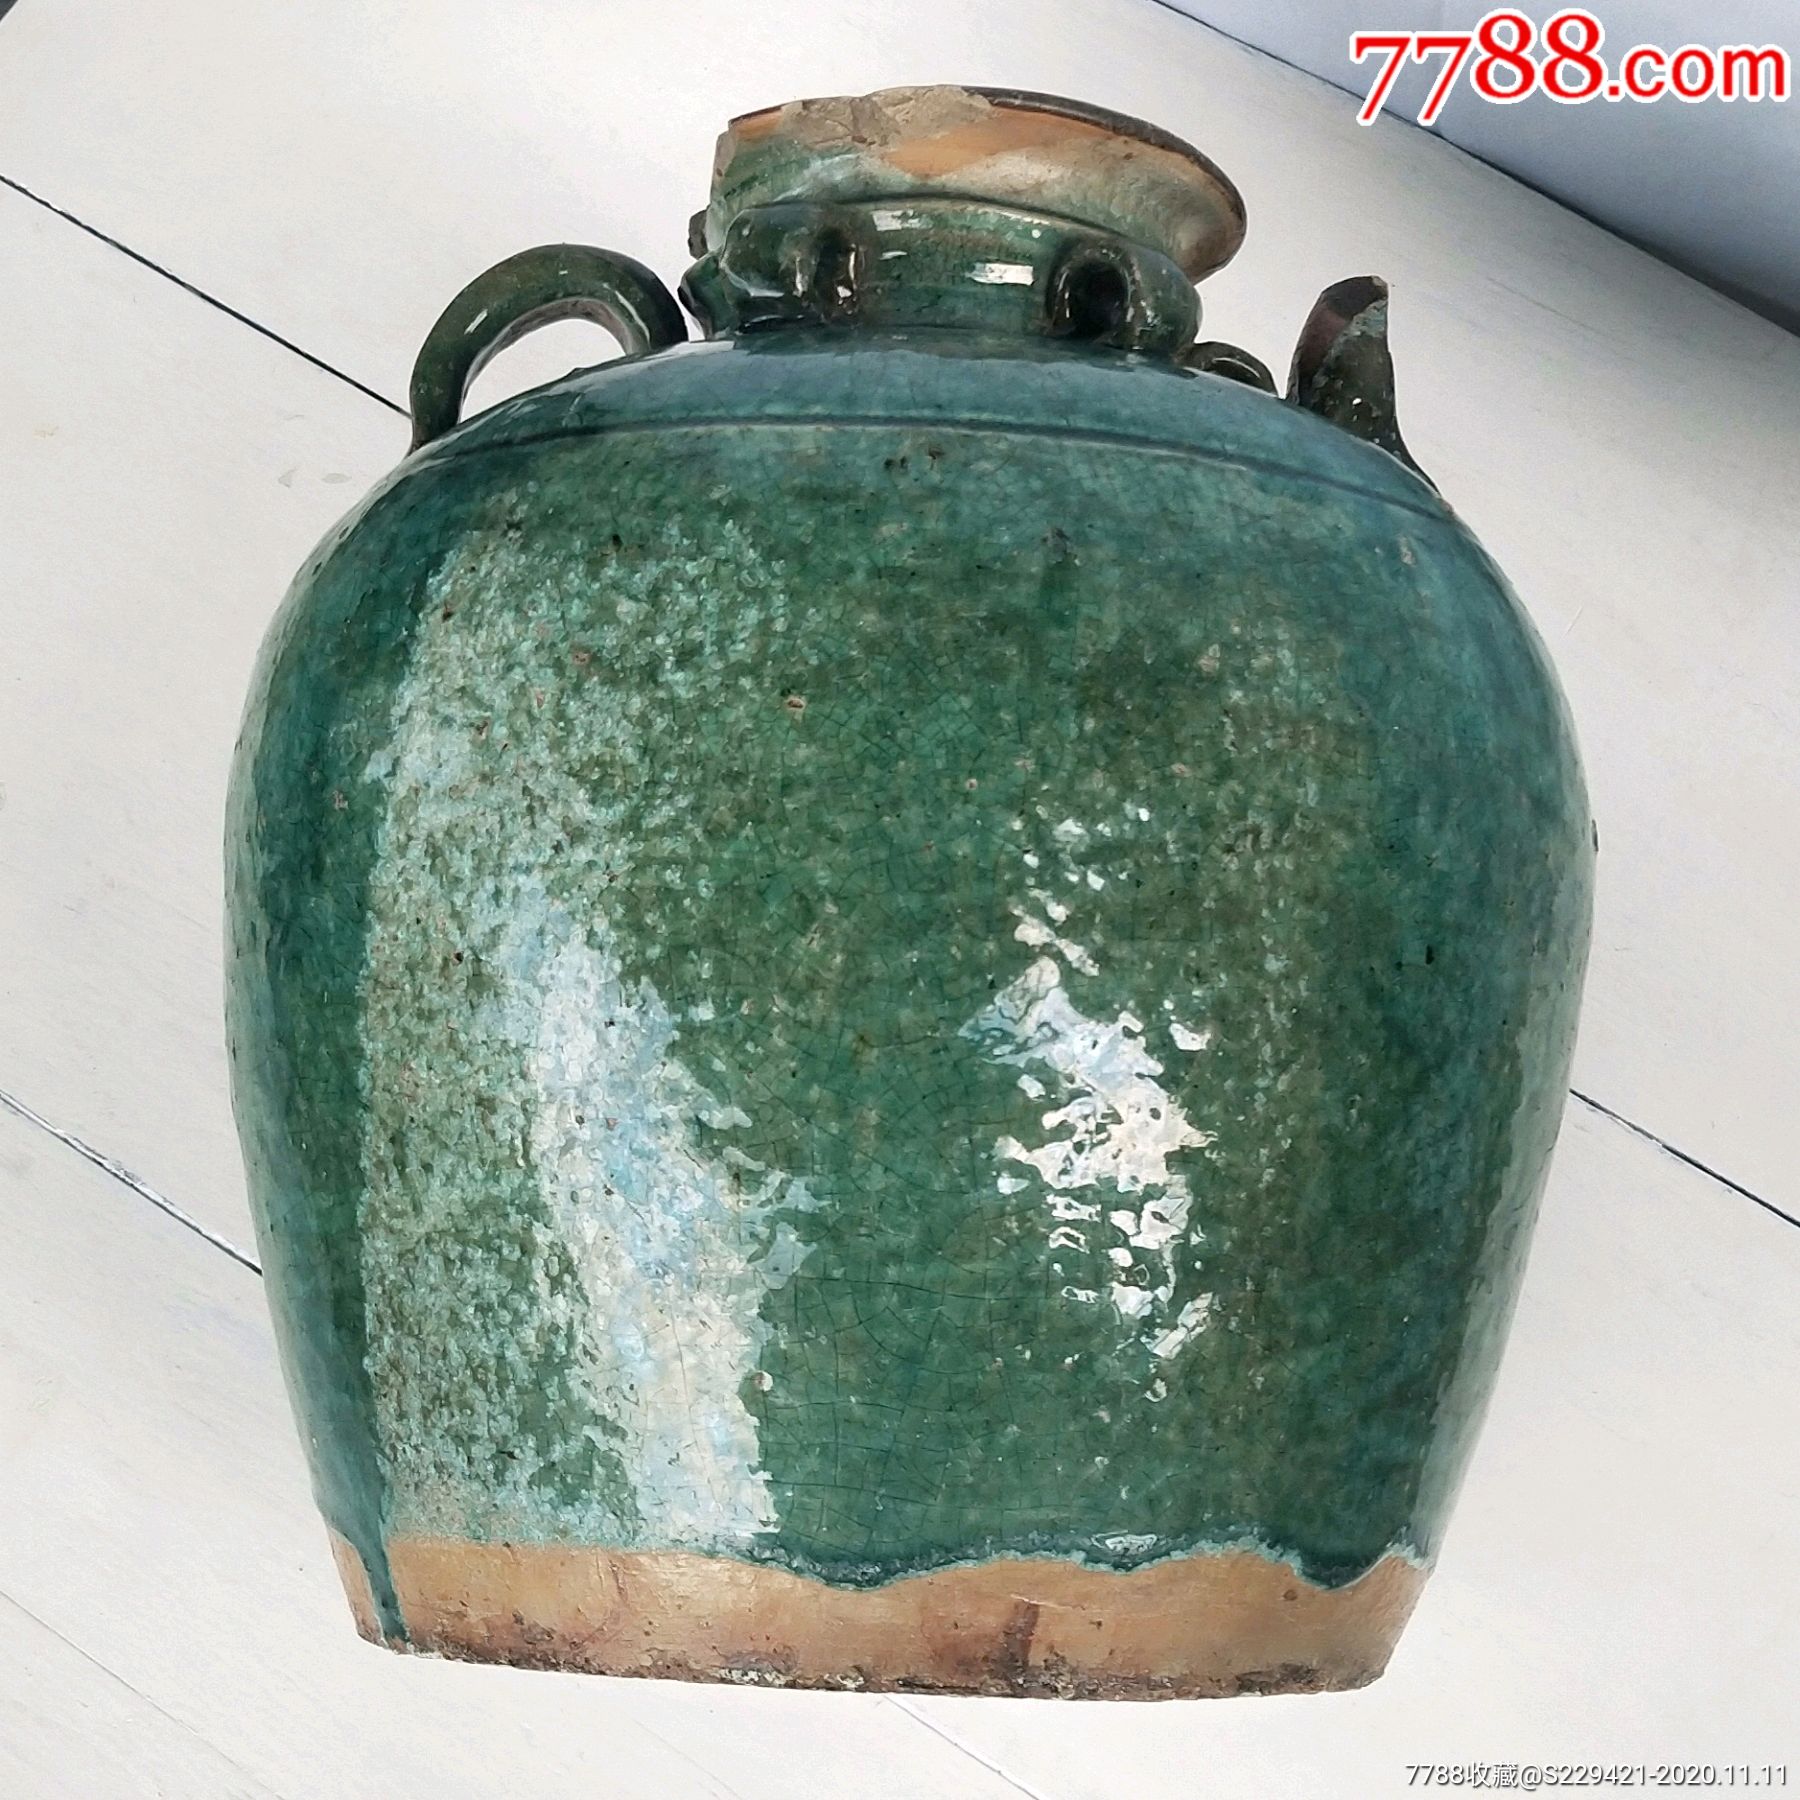 清代绿釉酒壶古董陶器原创设计耳系坛子摆件收藏品真品